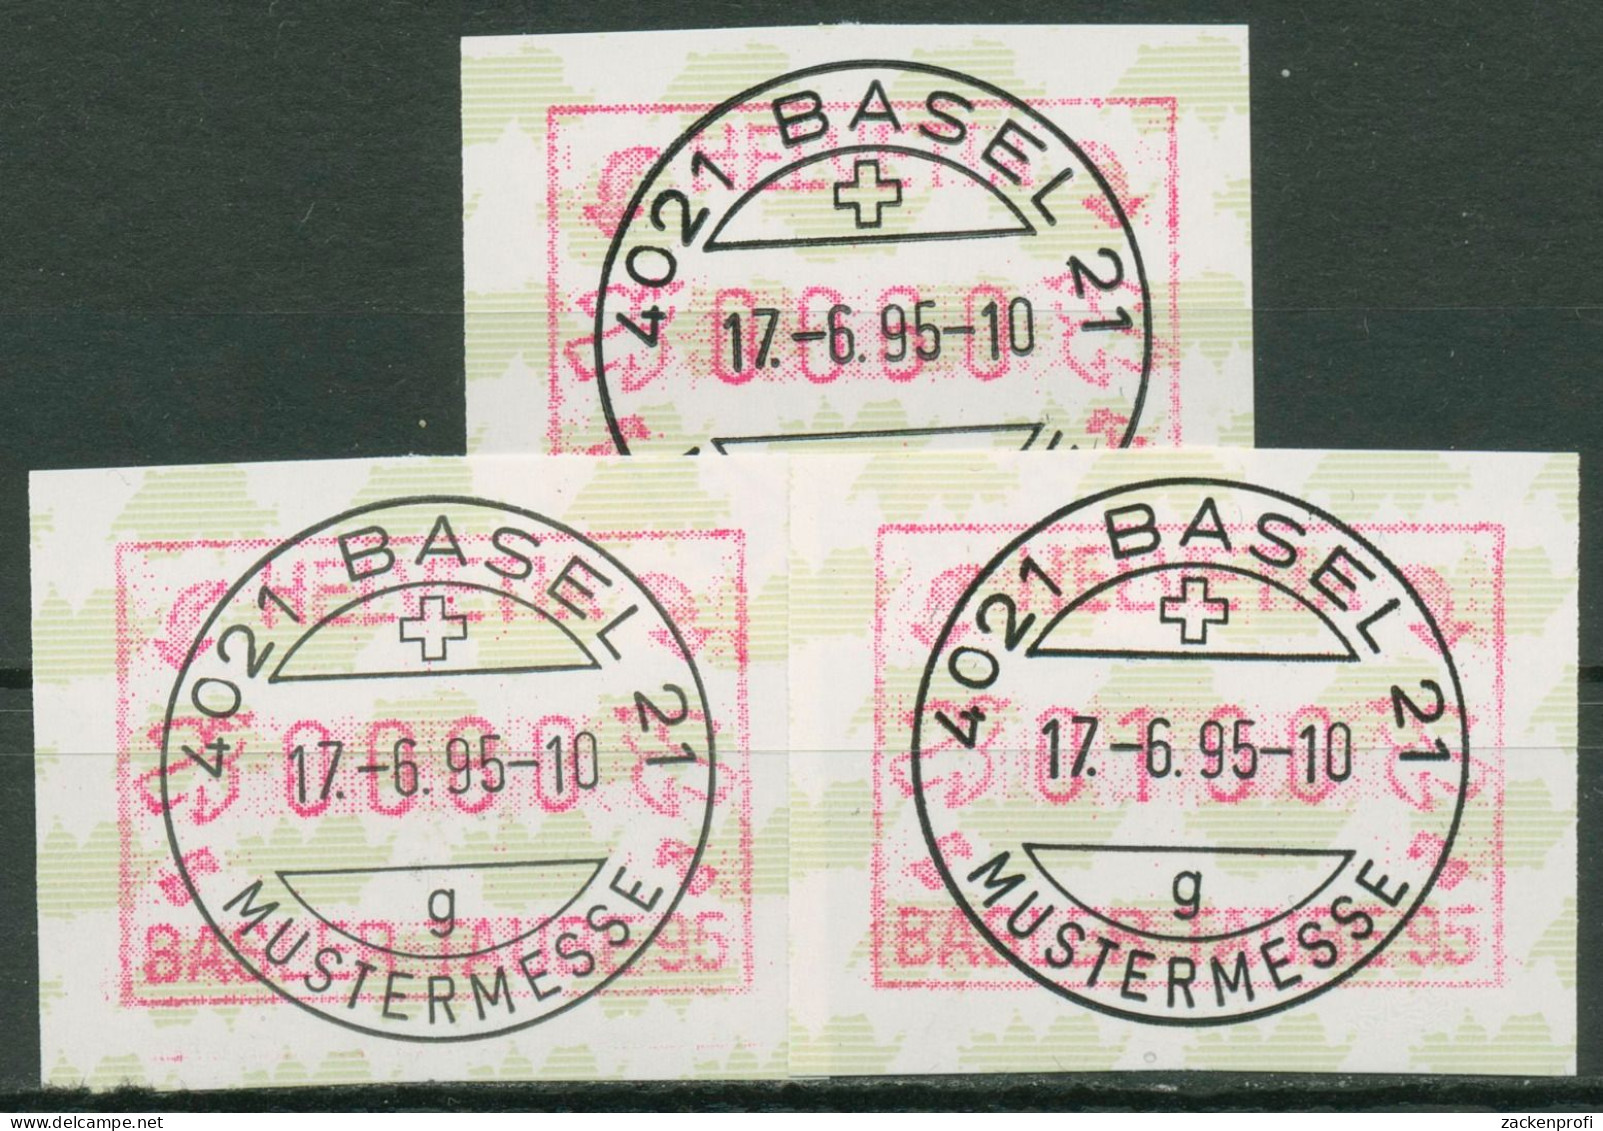 Schweiz Automatenmarken 1995 Basler Taube ATM 6 S 1 Gestempelt - Automatic Stamps